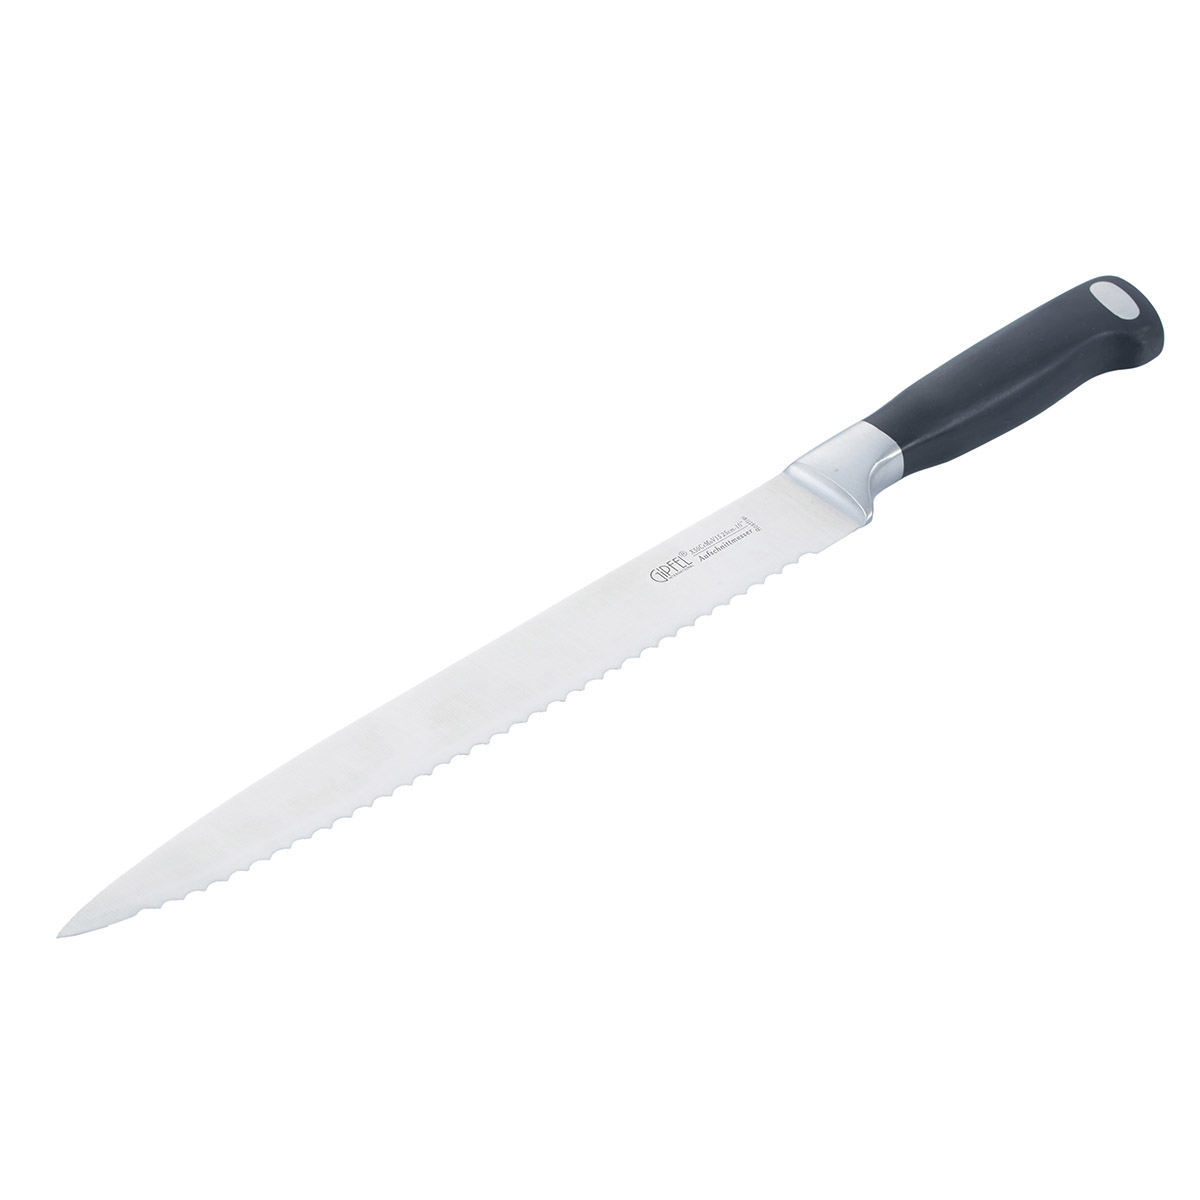 Нож разделочный Gipfel Professional Line 6766, цвет черный